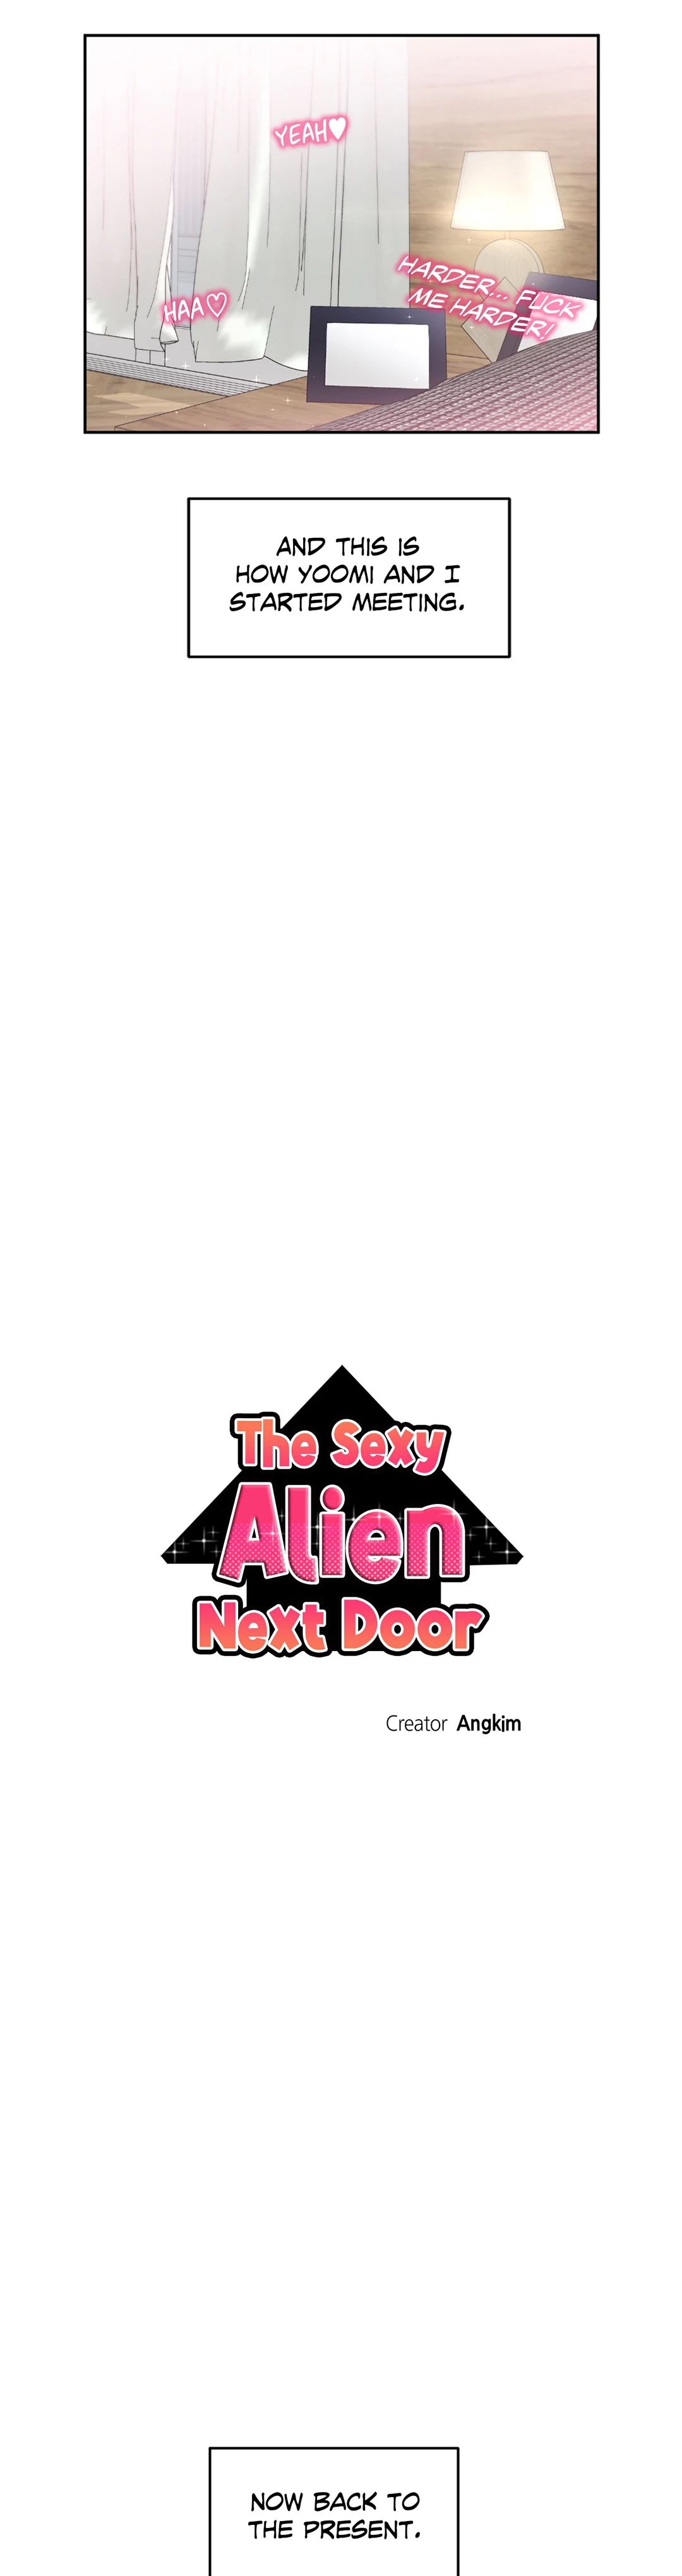 The Sexy Alien Next Door image